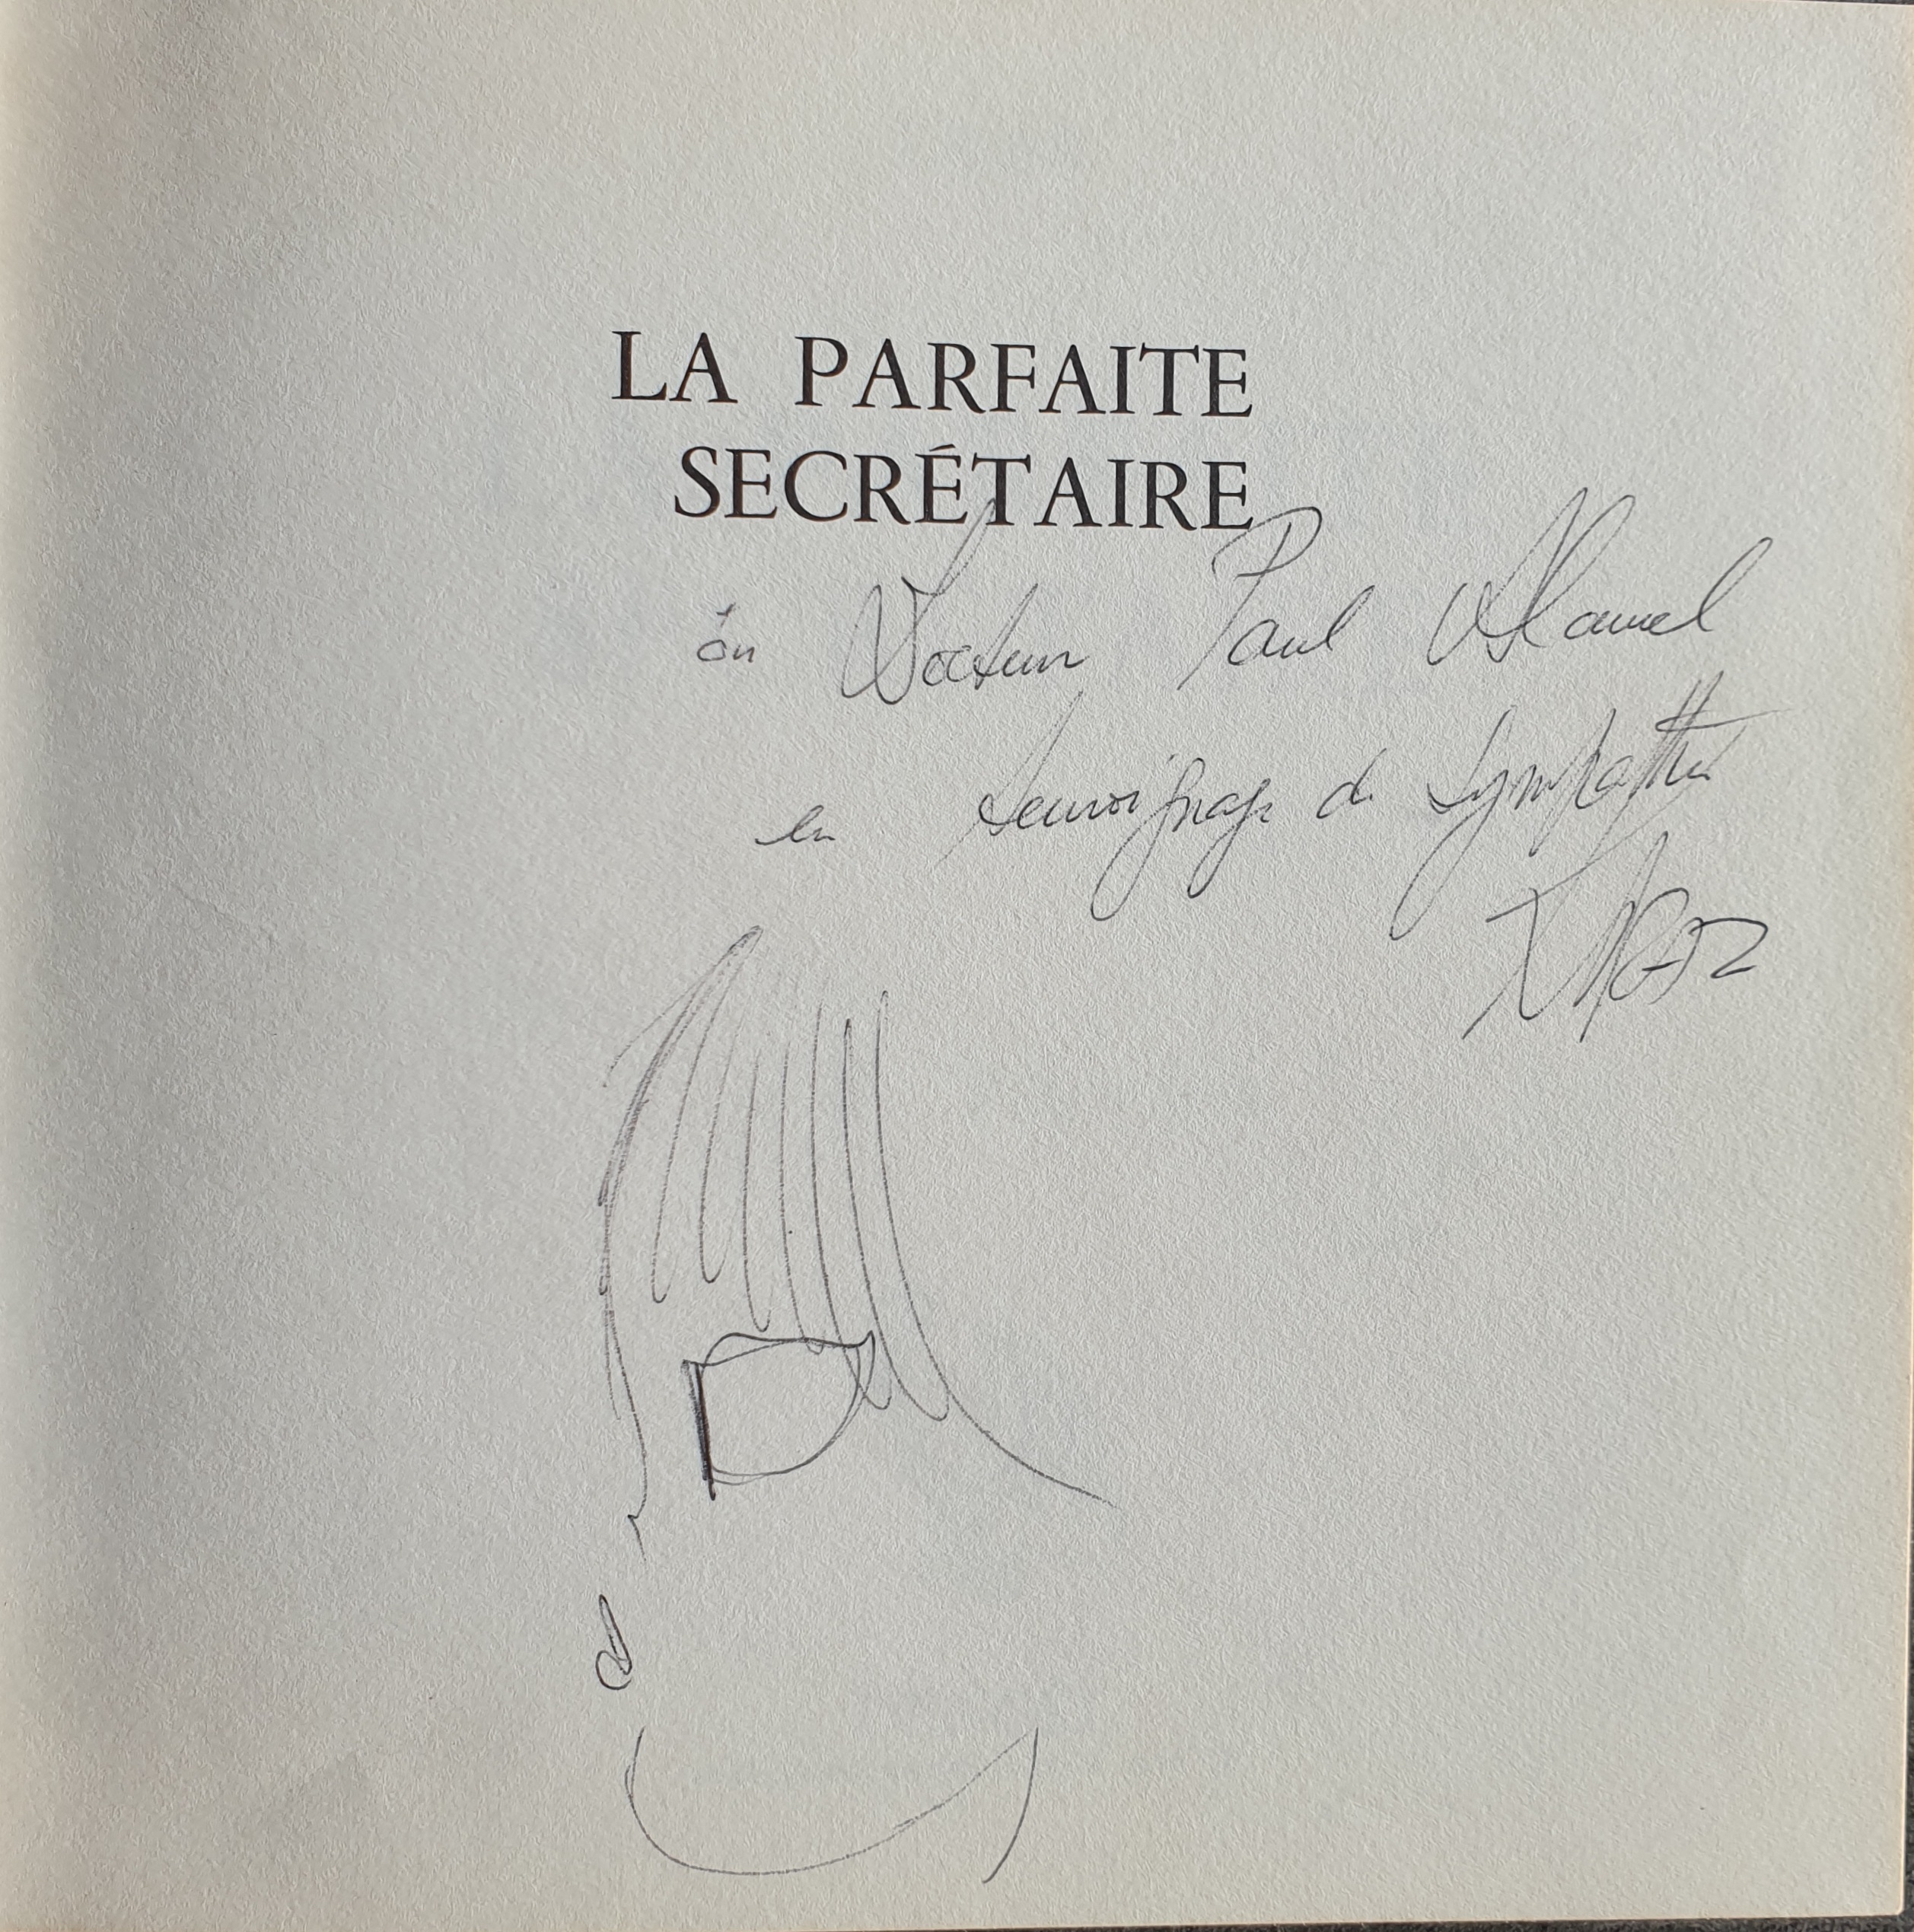 1967 - La parfaite secrétaire by Kiraz - Sketch